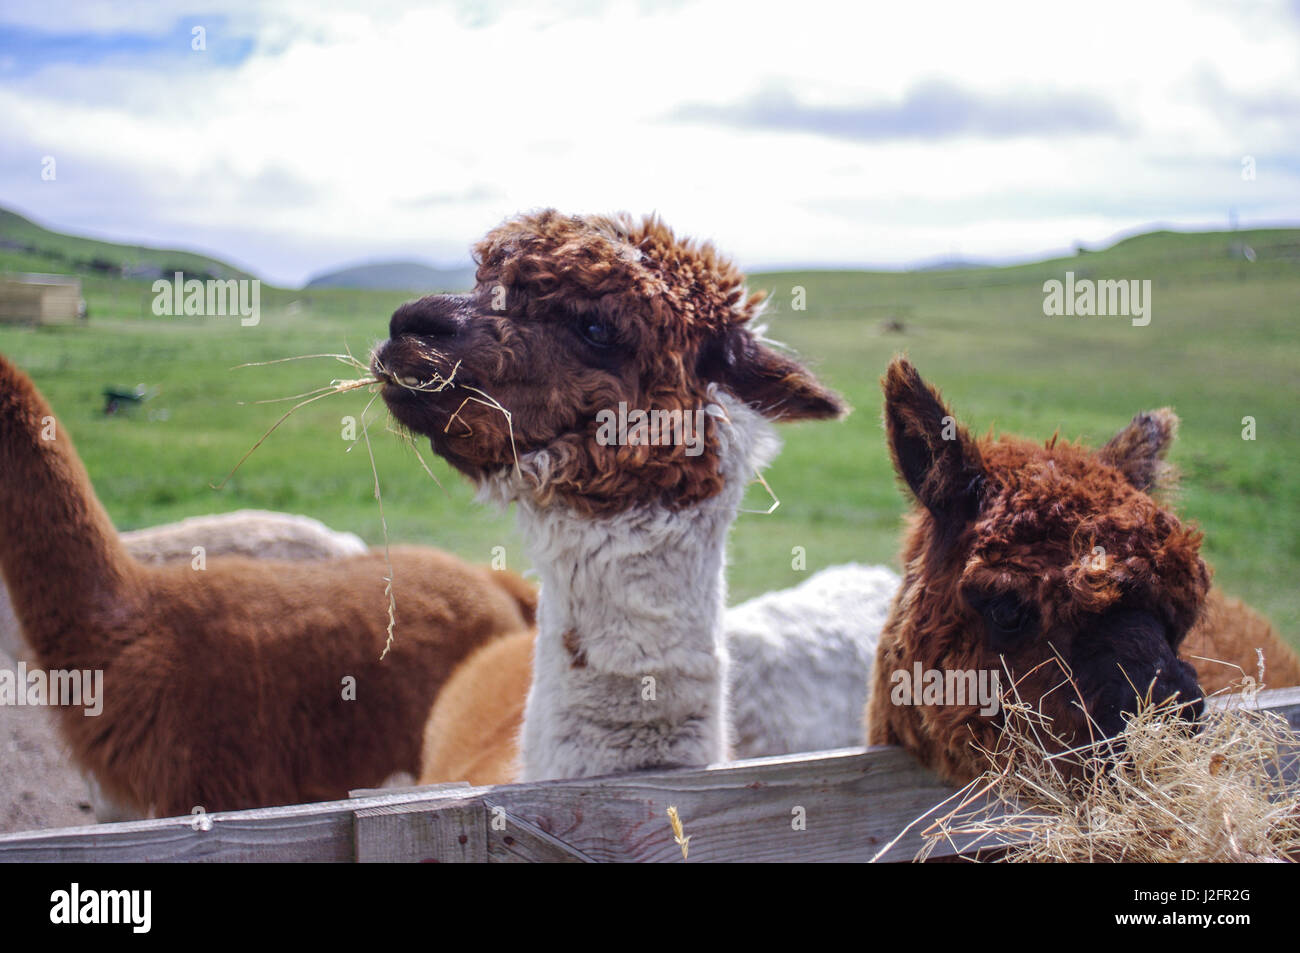 Les lamas se nourrissent d'une ferme à distance en Shetland. Llama llama de mad (fromage de lait. Ces lamas semblent heureux. Banque D'Images